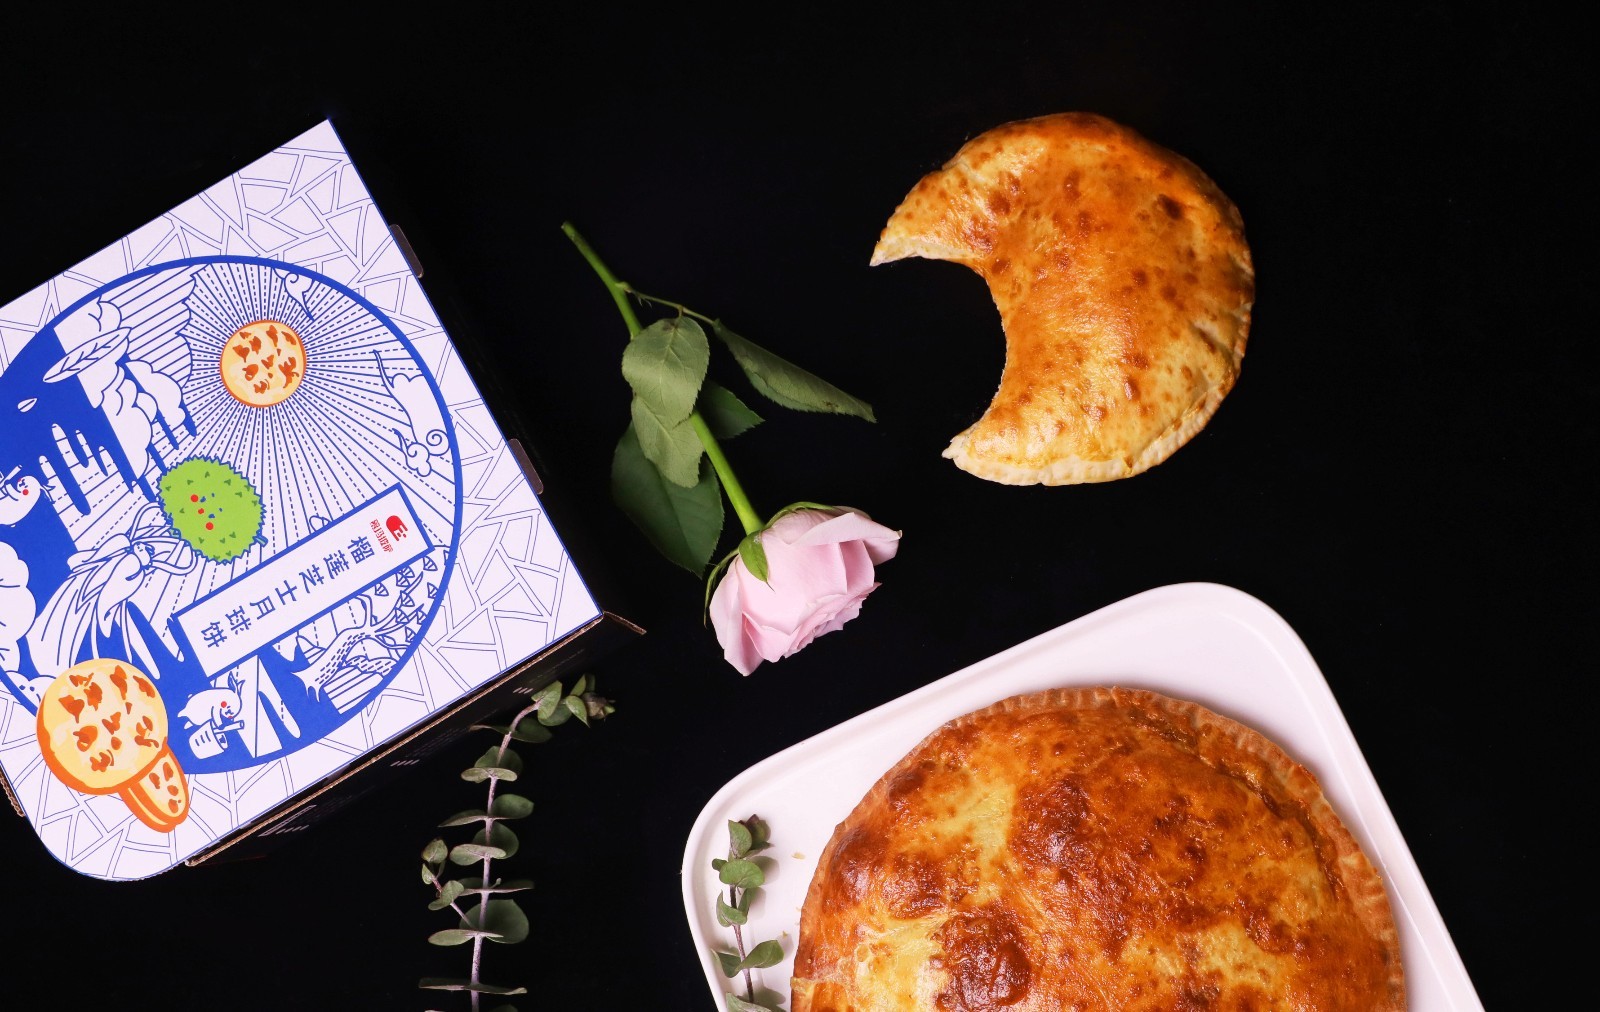 慕玛披萨用“榴莲芝士月球饼”打造中国传统节日新文化